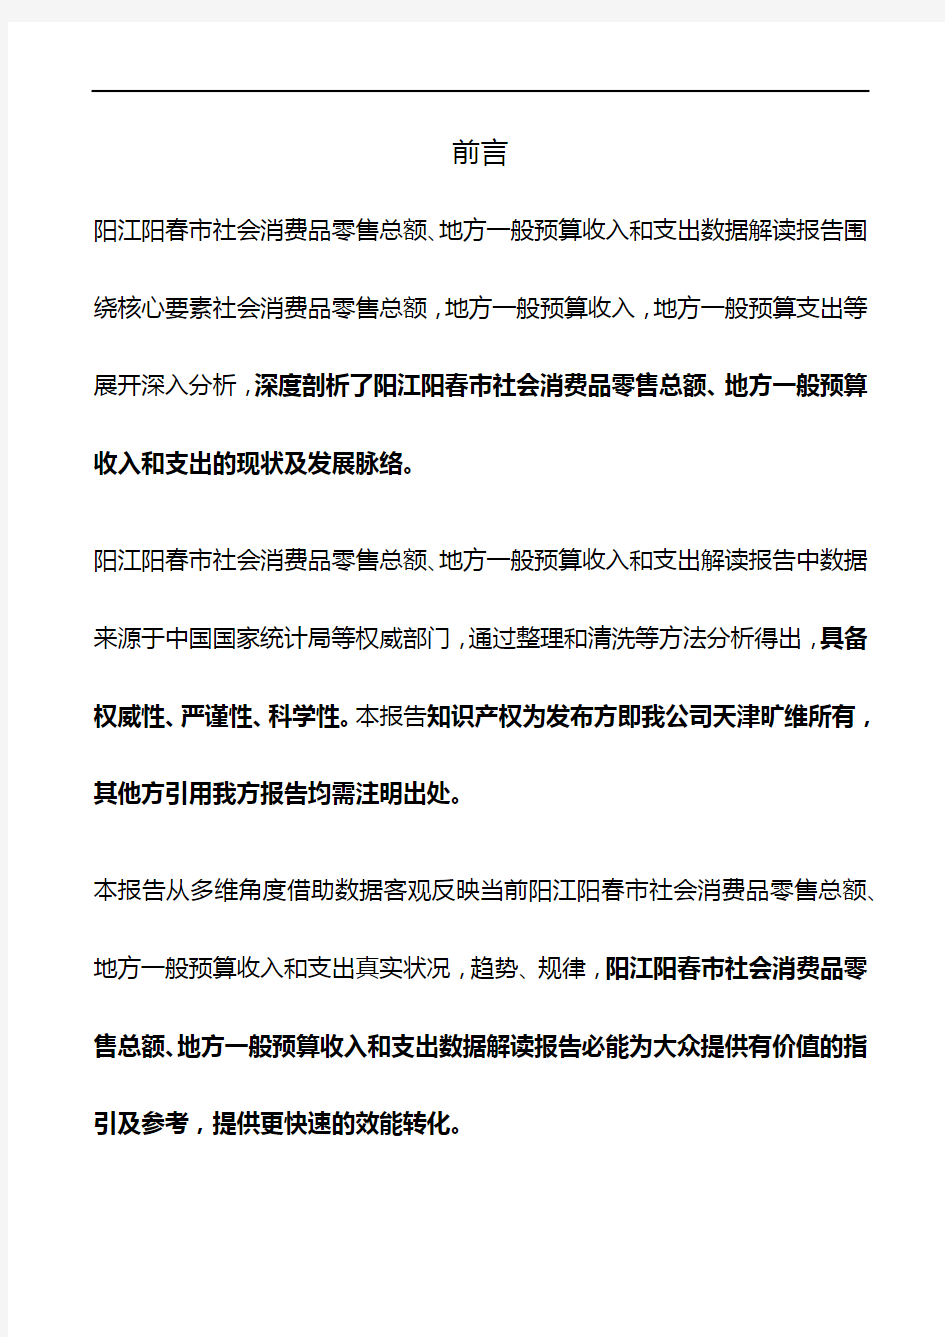 广东省阳江阳春市社会消费品零售总额、地方一般预算收入和支出3年数据解读报告2020版